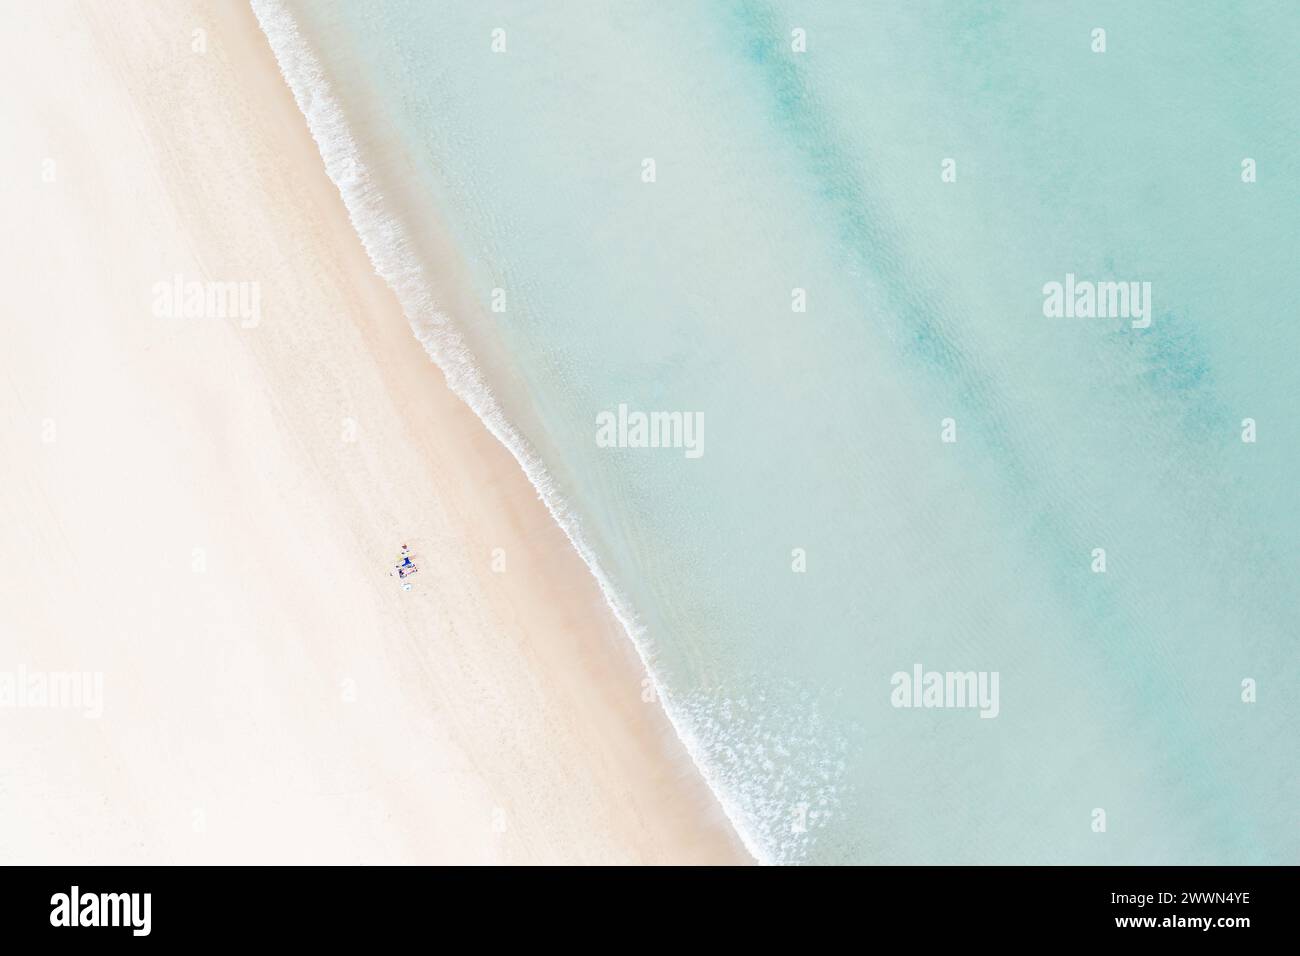 Paesaggio Vista aerea della spiaggia pastello con onde serene e atmosfera rilassante - perfetto per fughe costiere e vacanze di relax Foto Stock